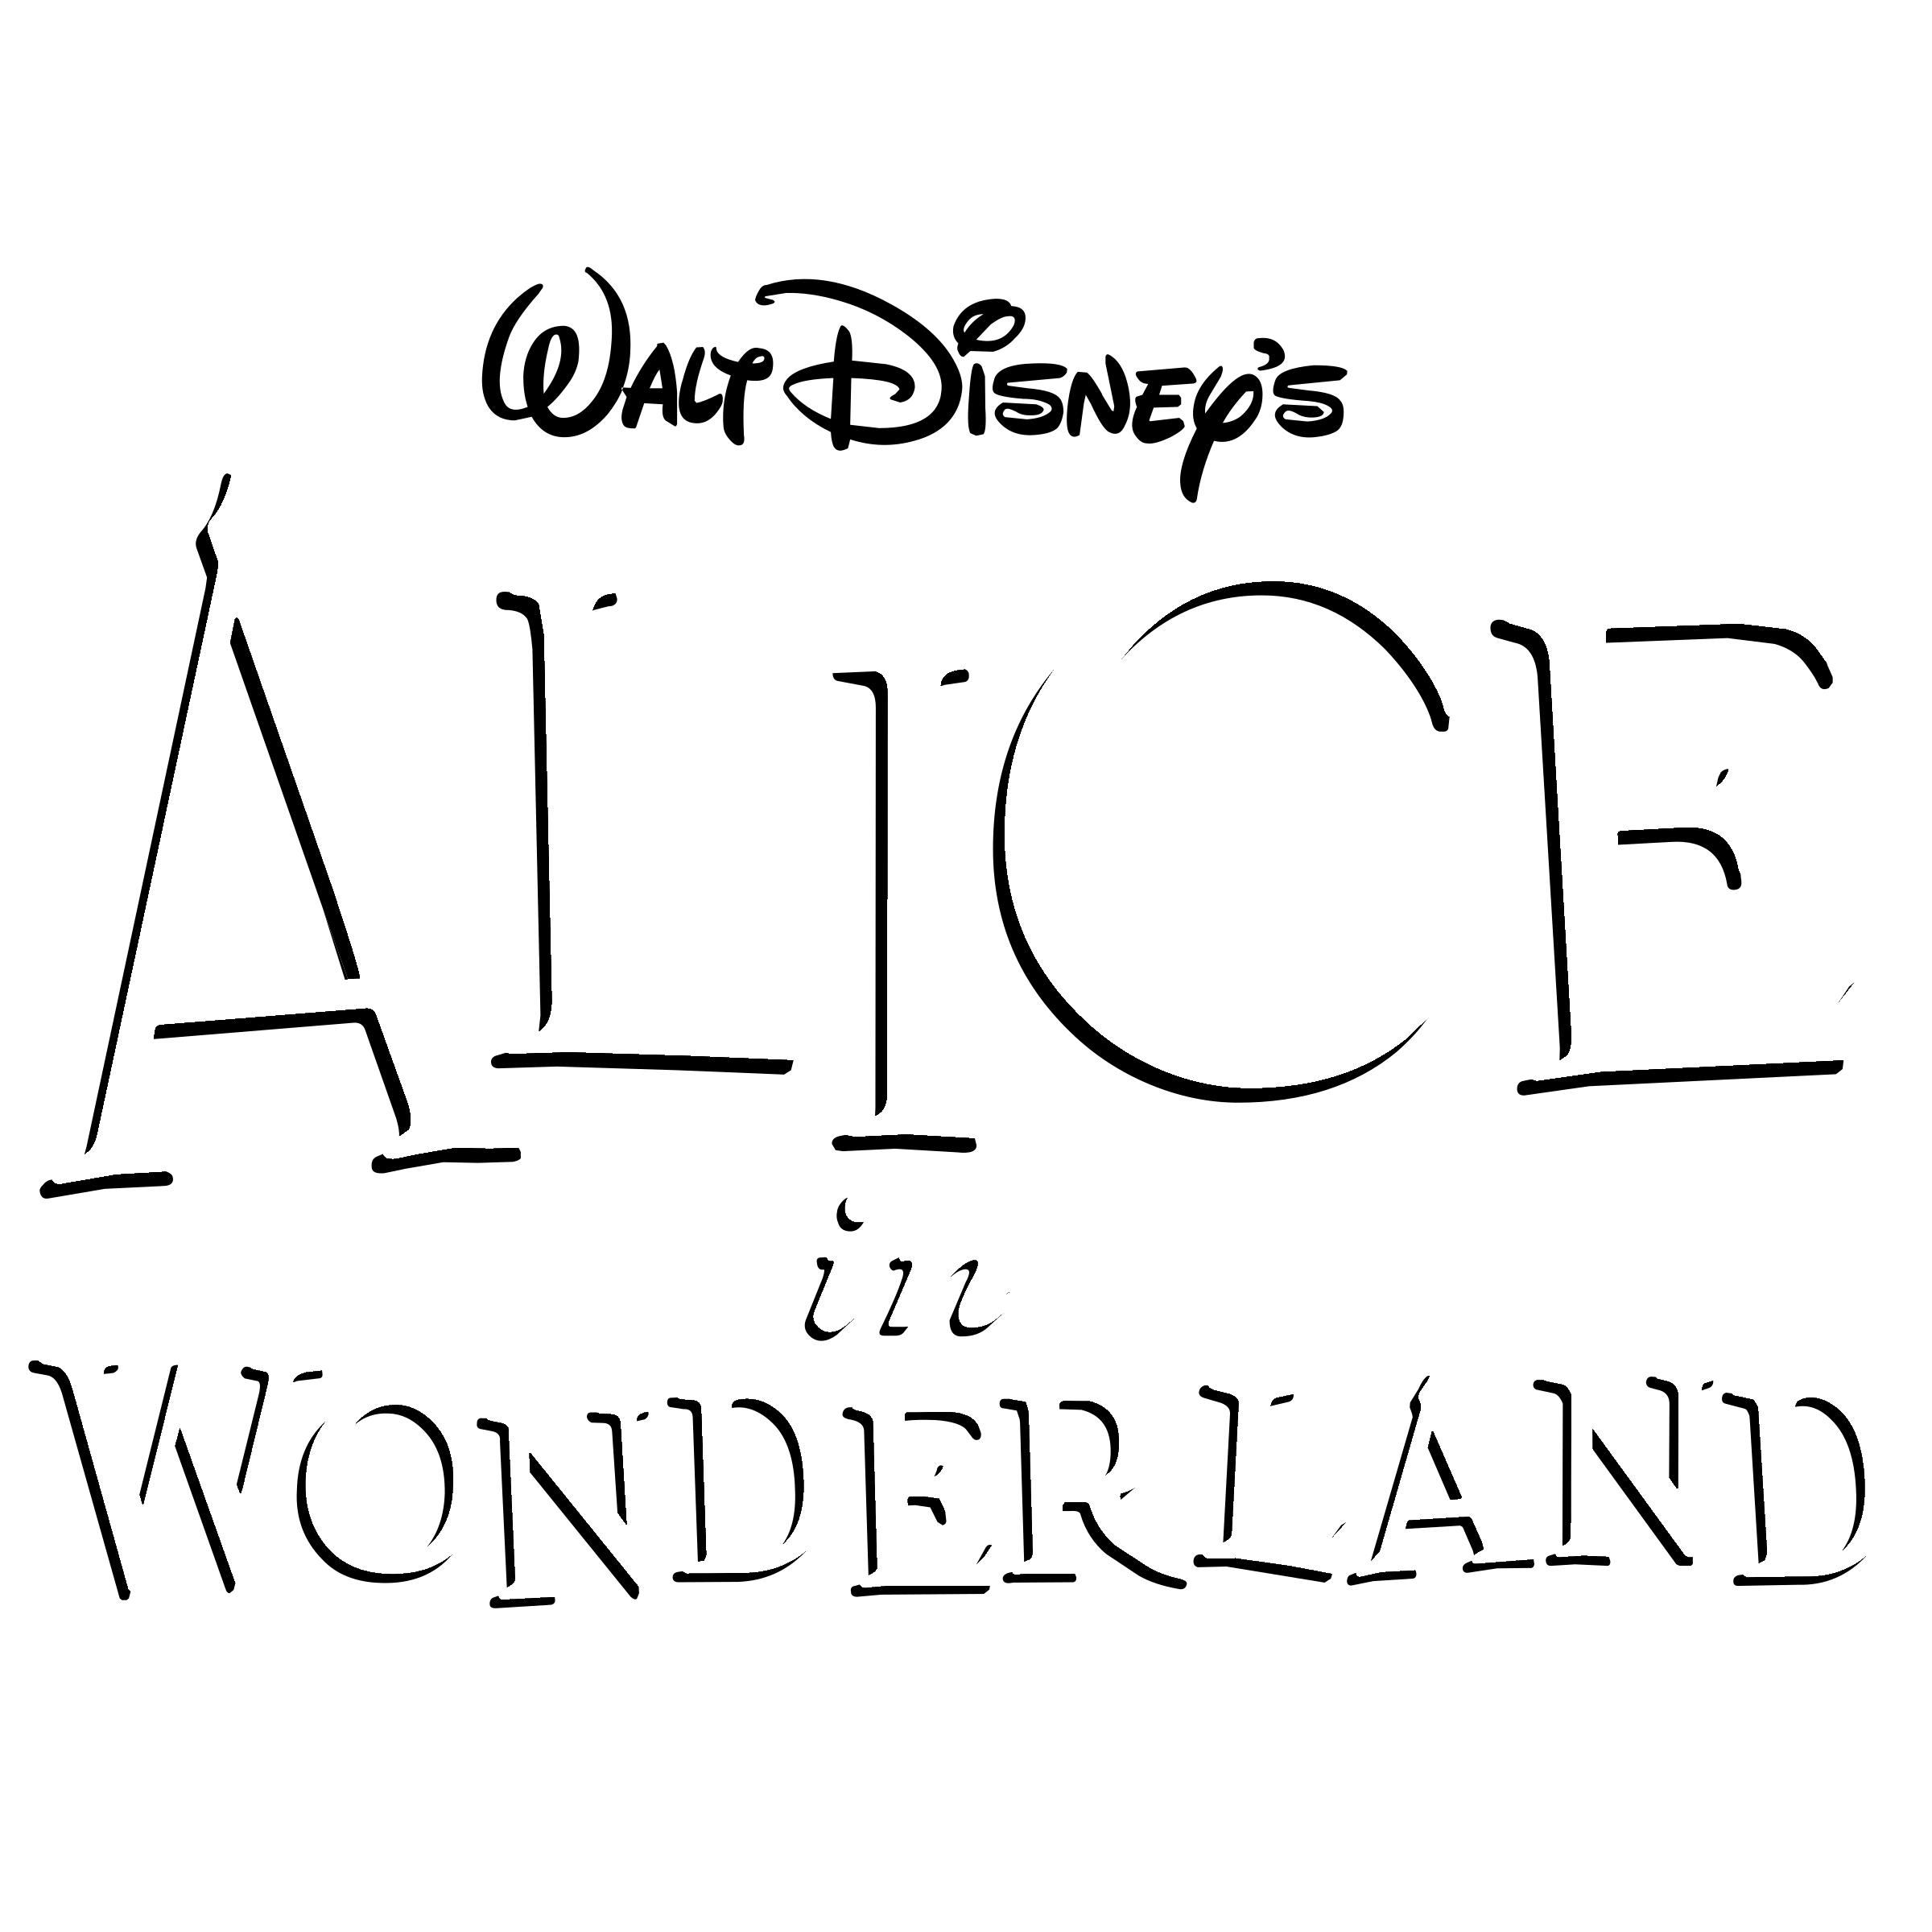 Disney's Alice in Wonderland Logo - Disney's Alice in Wonderland Logo PNG Transparent & SVG Vector